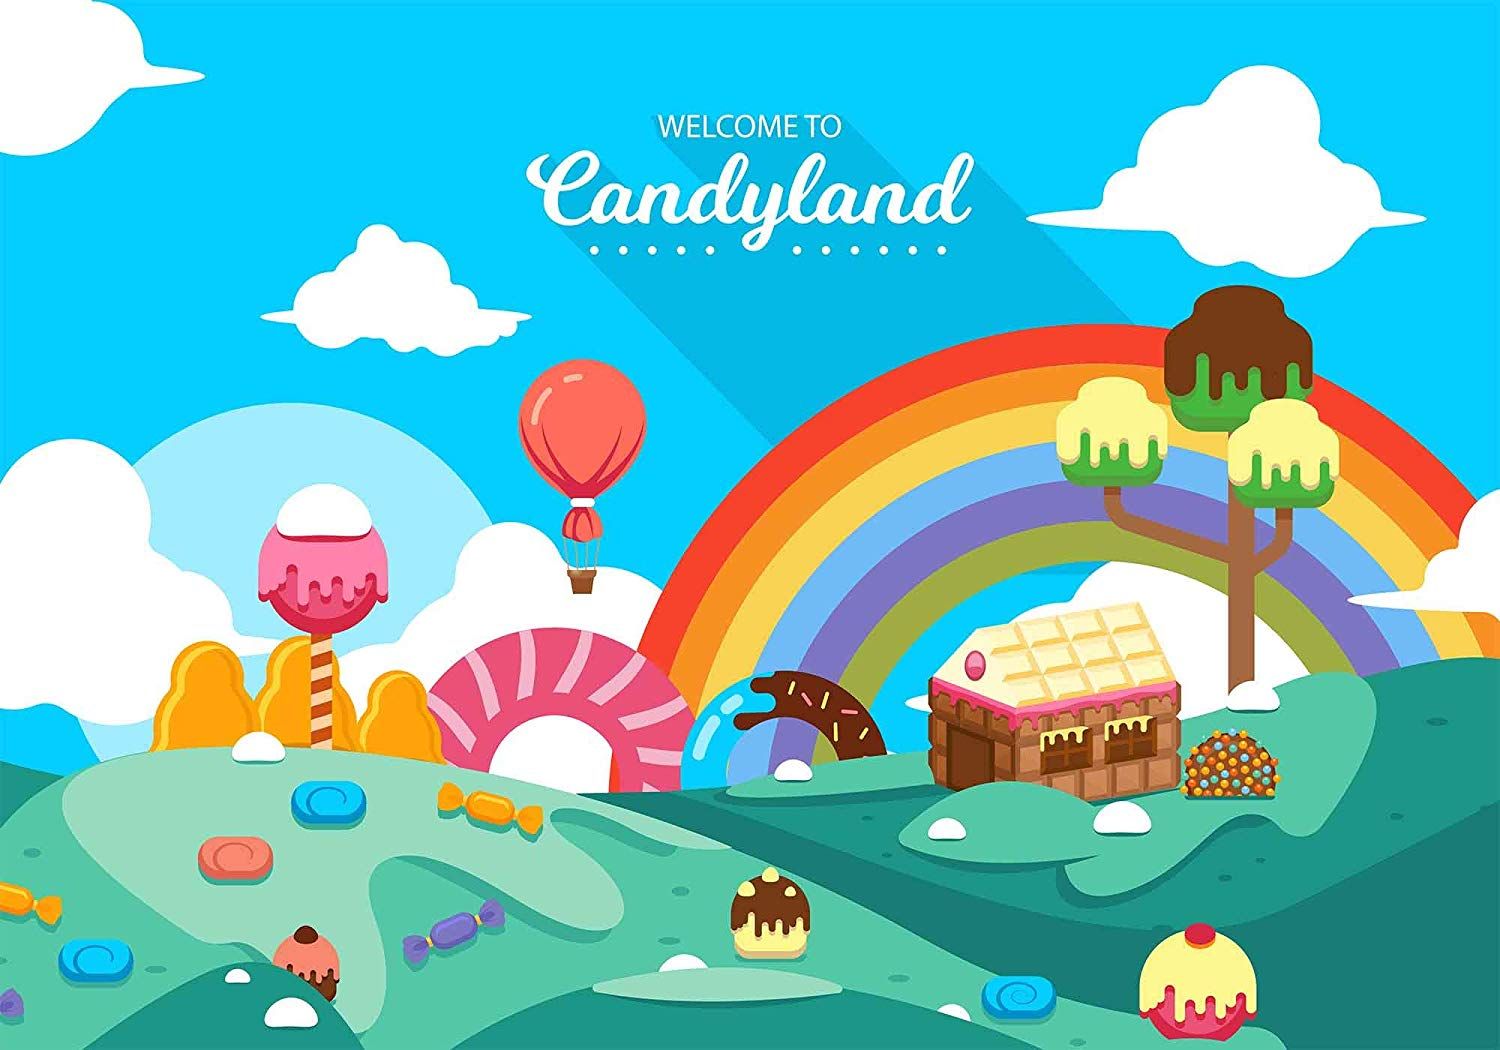 Candyland backdrop